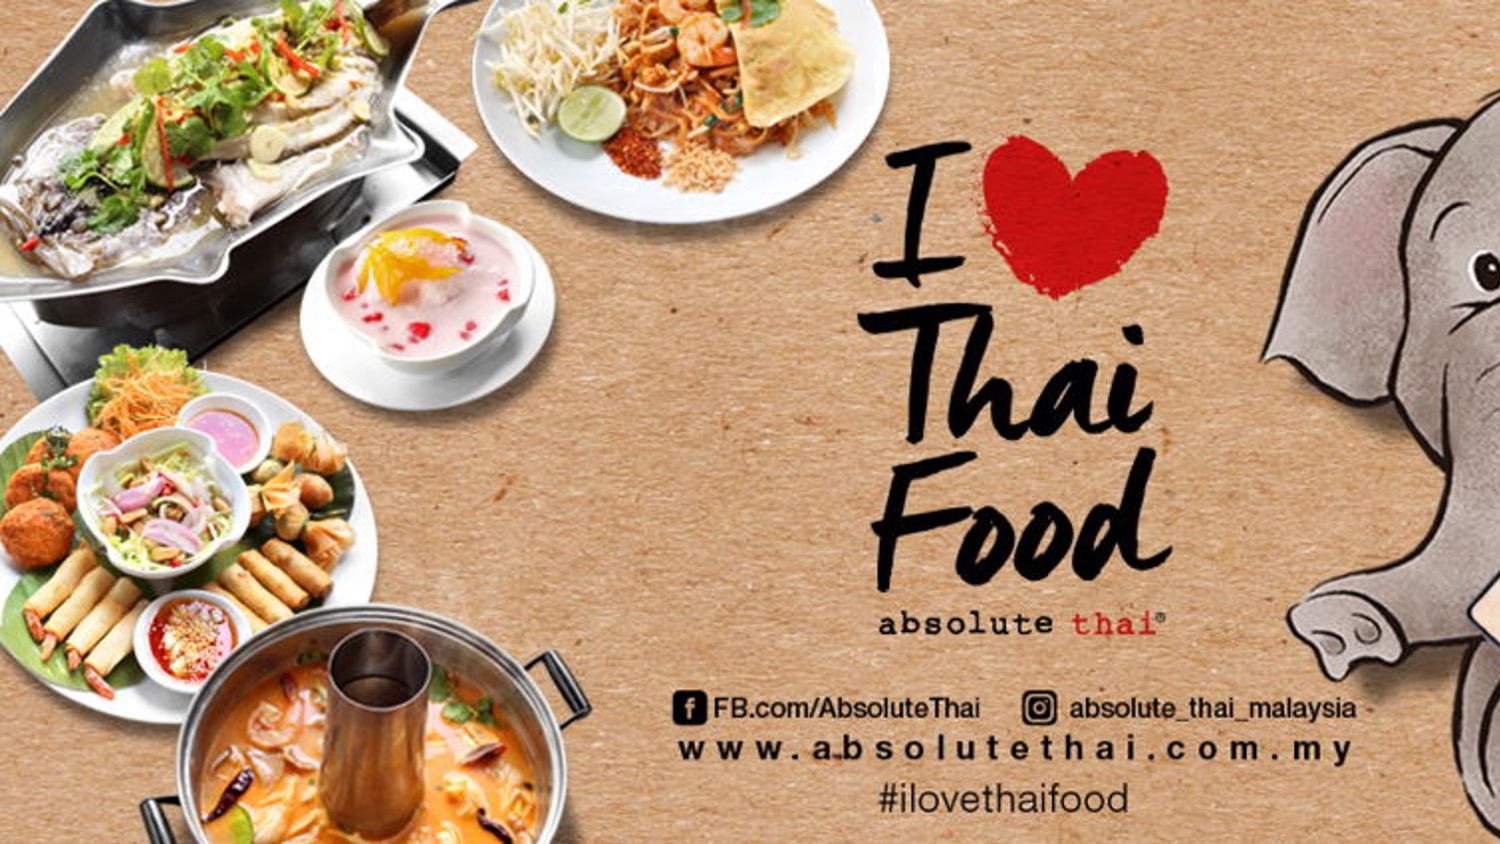 senarai harga menu absolute thai malaysia terbaru